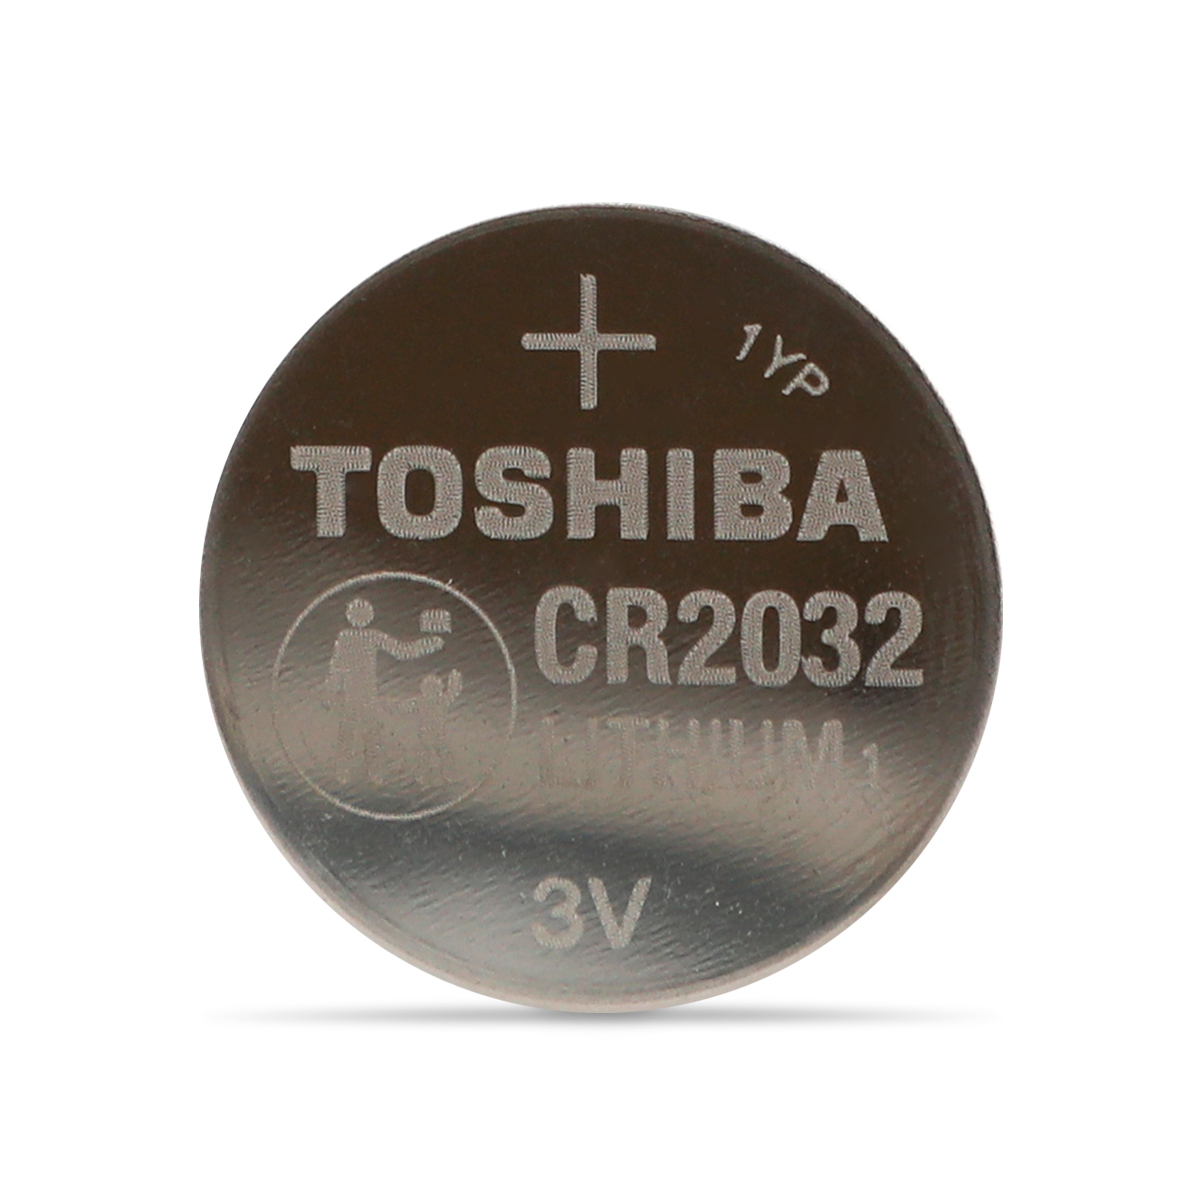 6 pilas de litio tipo botón “CR2032” Steren Tienda en L